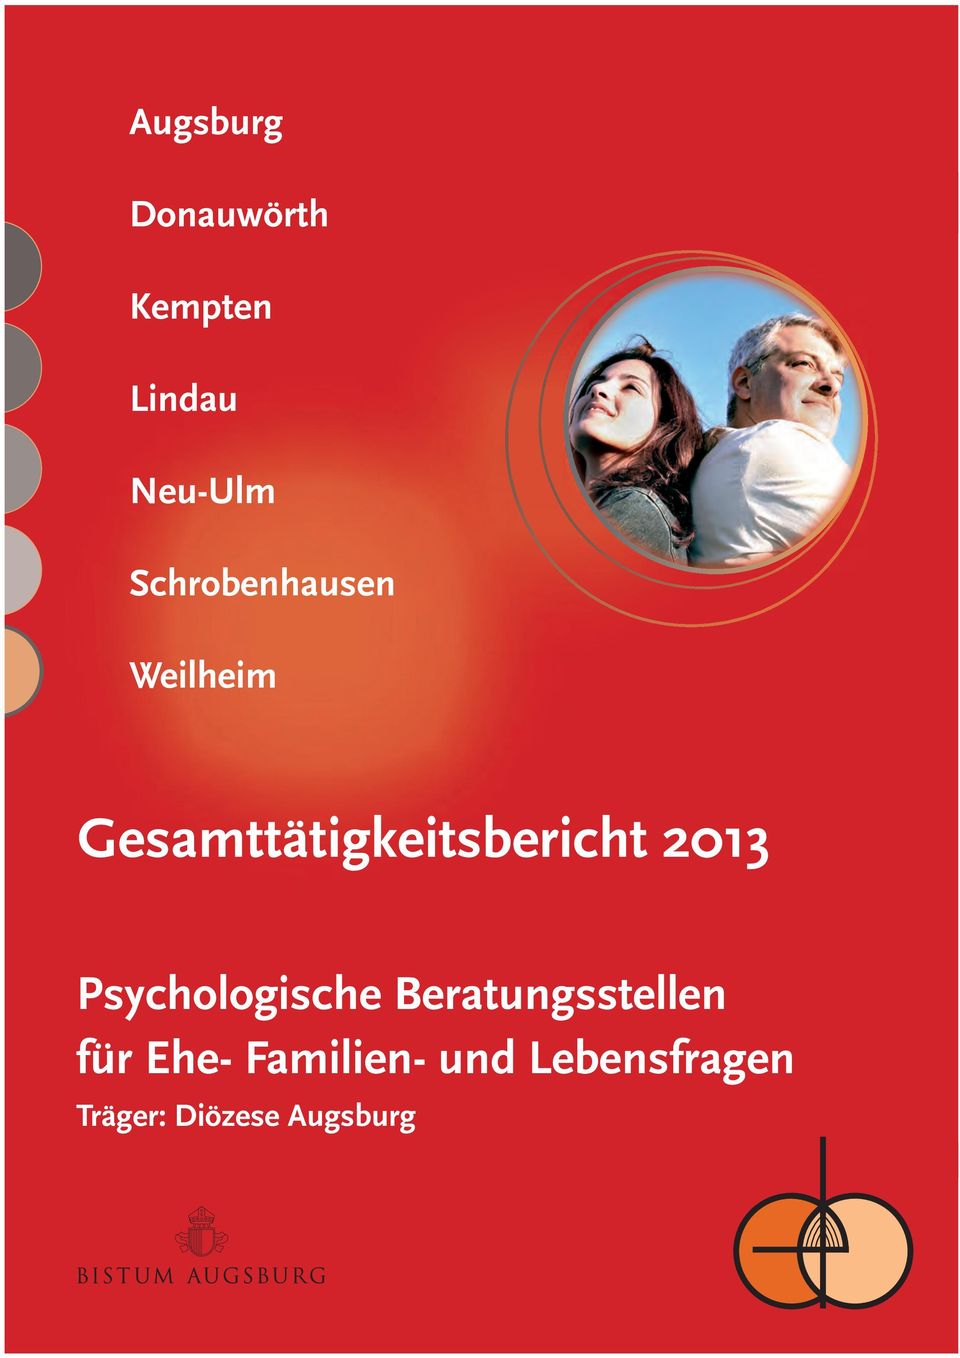 Gesamttätigkeitsbericht 2013 Psychologische